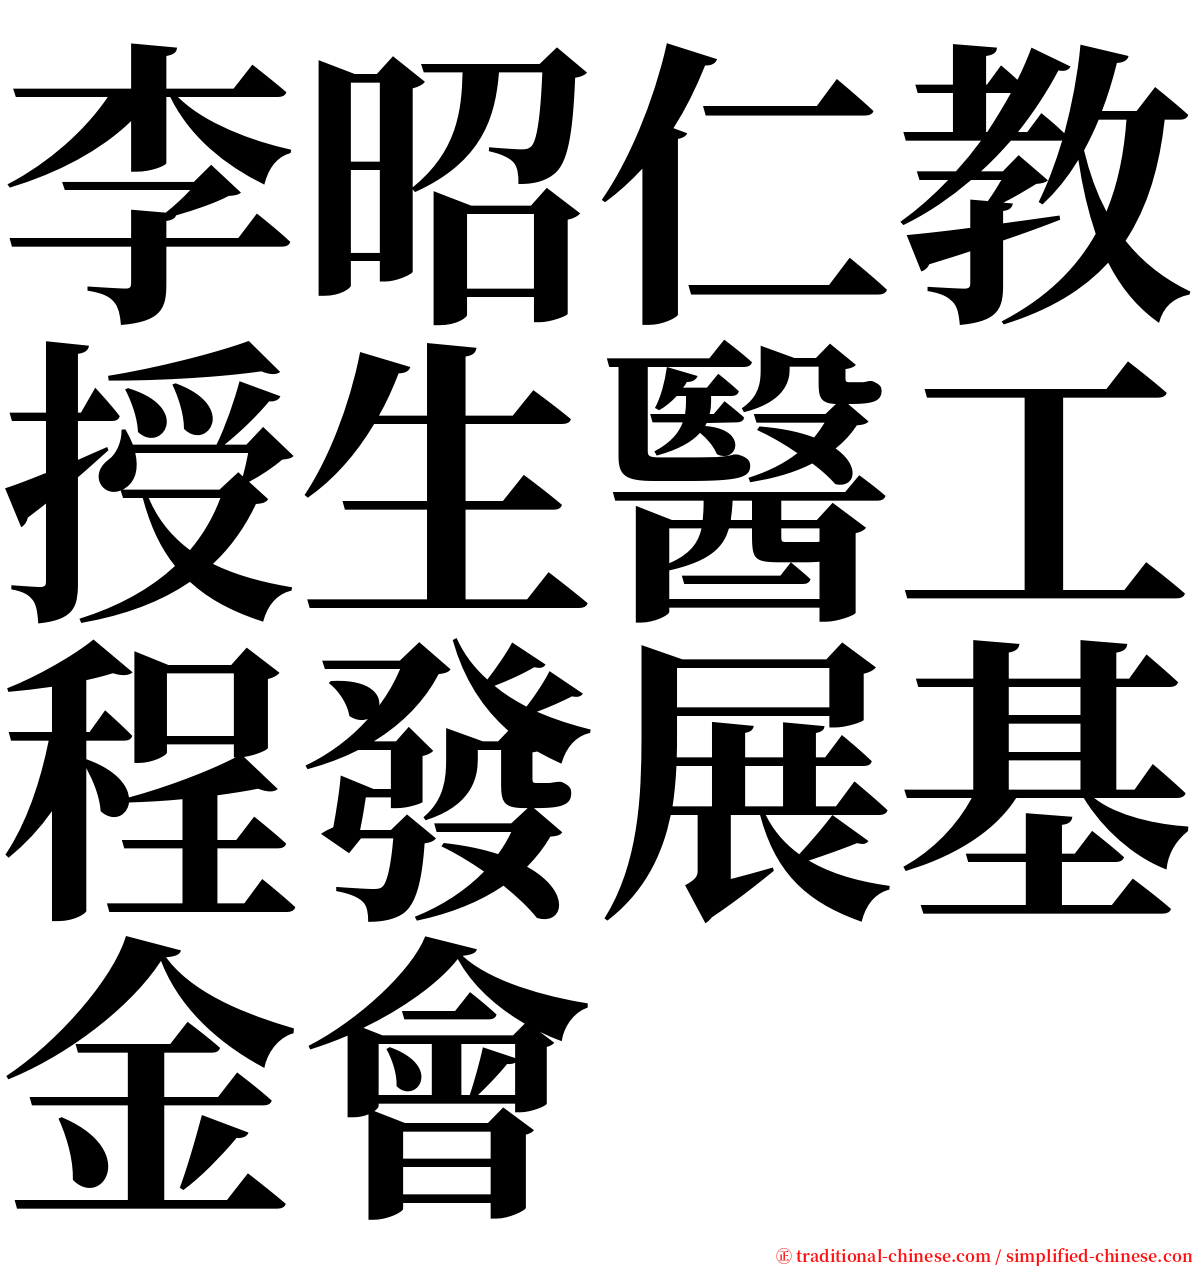 李昭仁教授生醫工程發展基金會 serif font